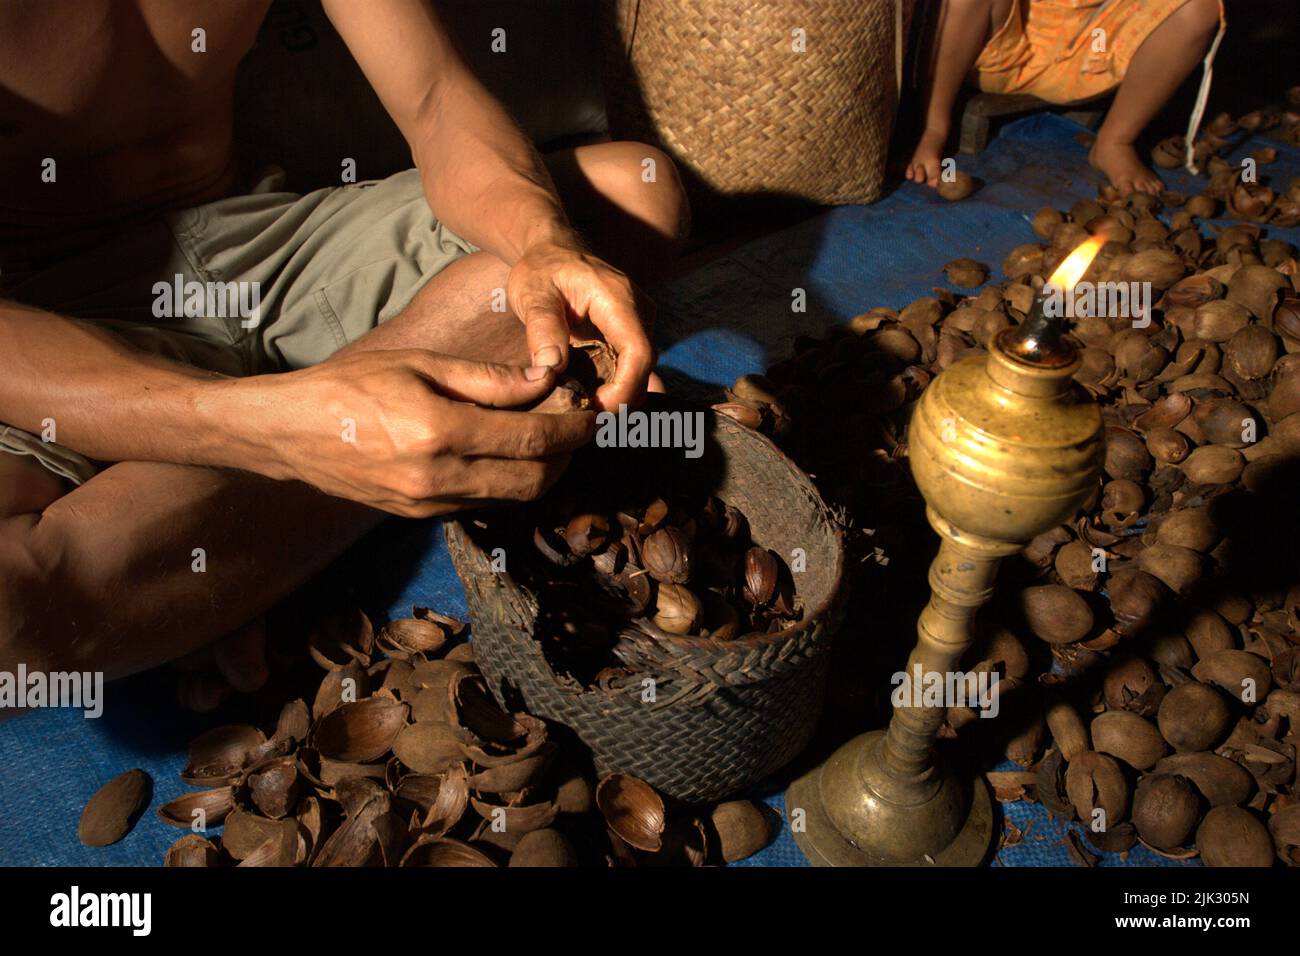 Un homme qui retire des coquilles de noix de suif Borneo (tengkawang) dans la maison de la communauté de Dayak Tamambaloh à Uluk Palin, Putussibau Utara, Kapuas Hulu, West Kalimantan, Indonésie. Banque D'Images